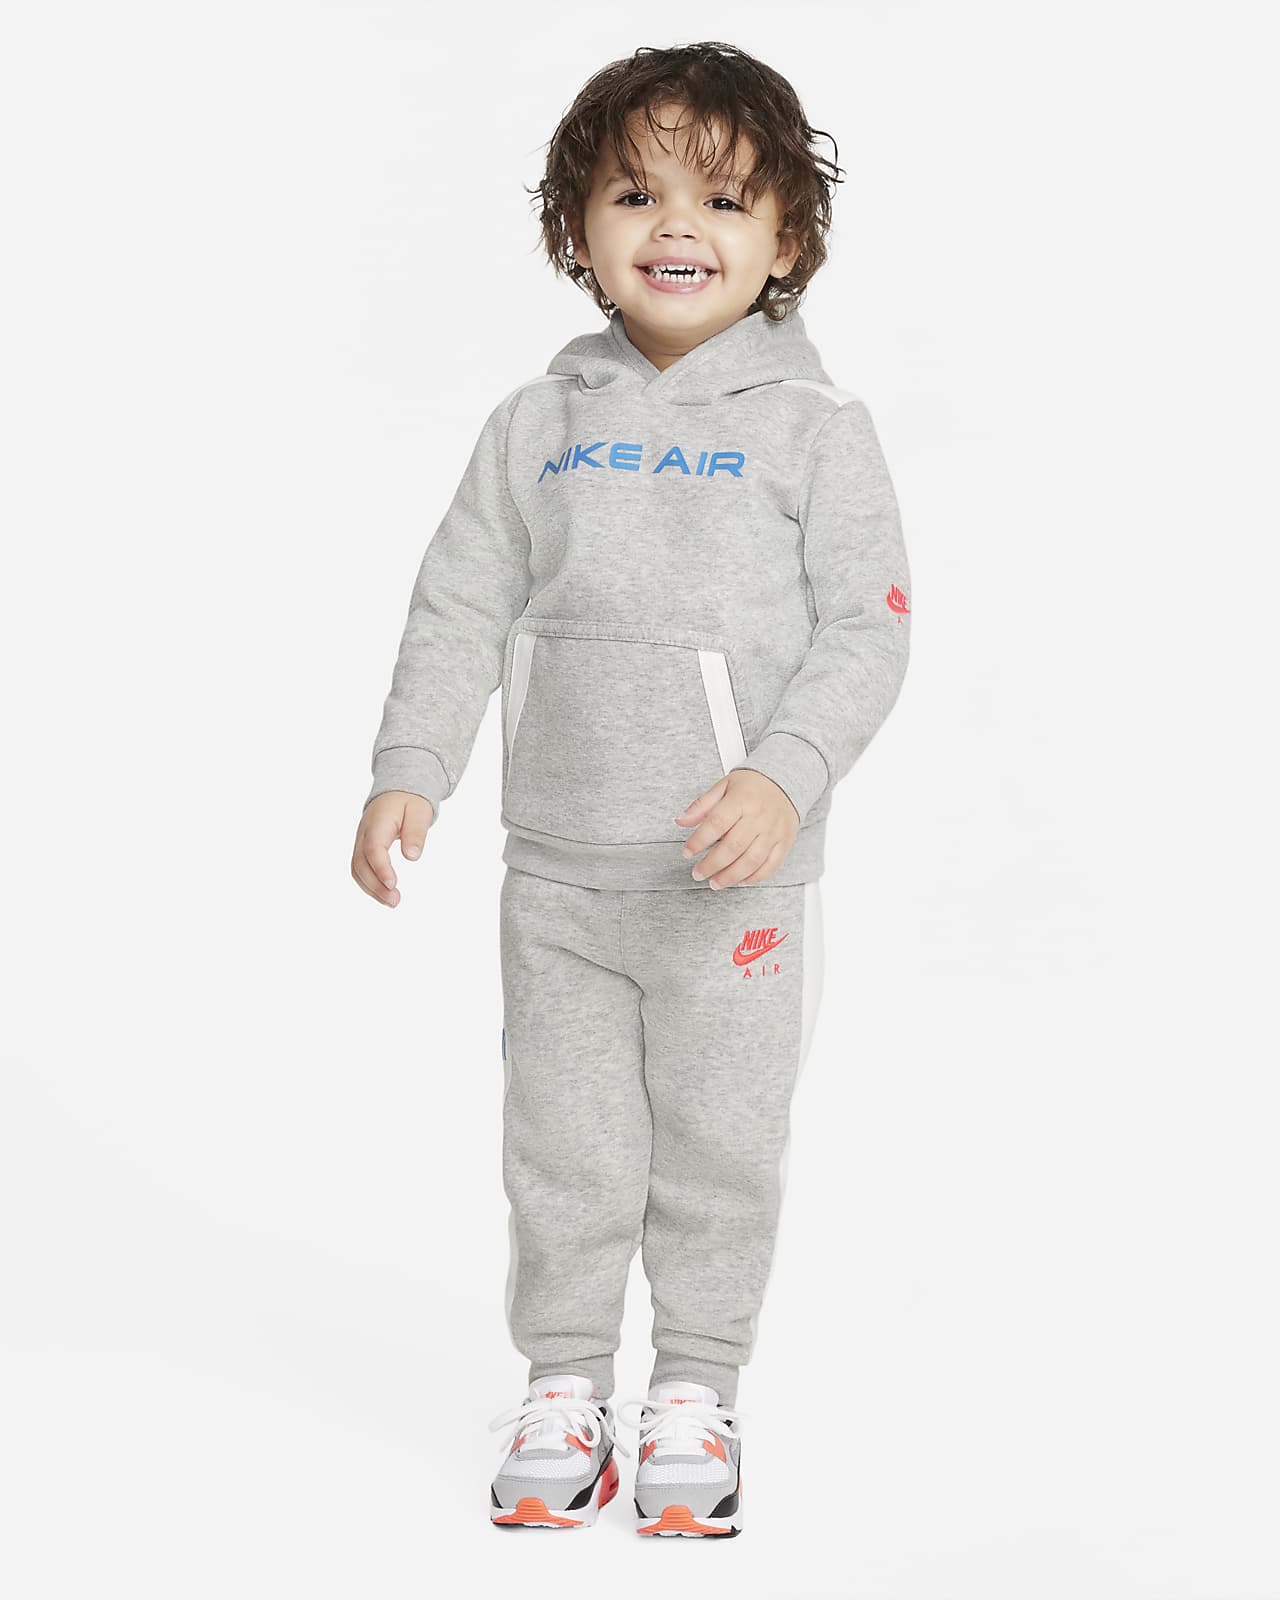 Nike Air Baby (12–24M) Hoodie and 